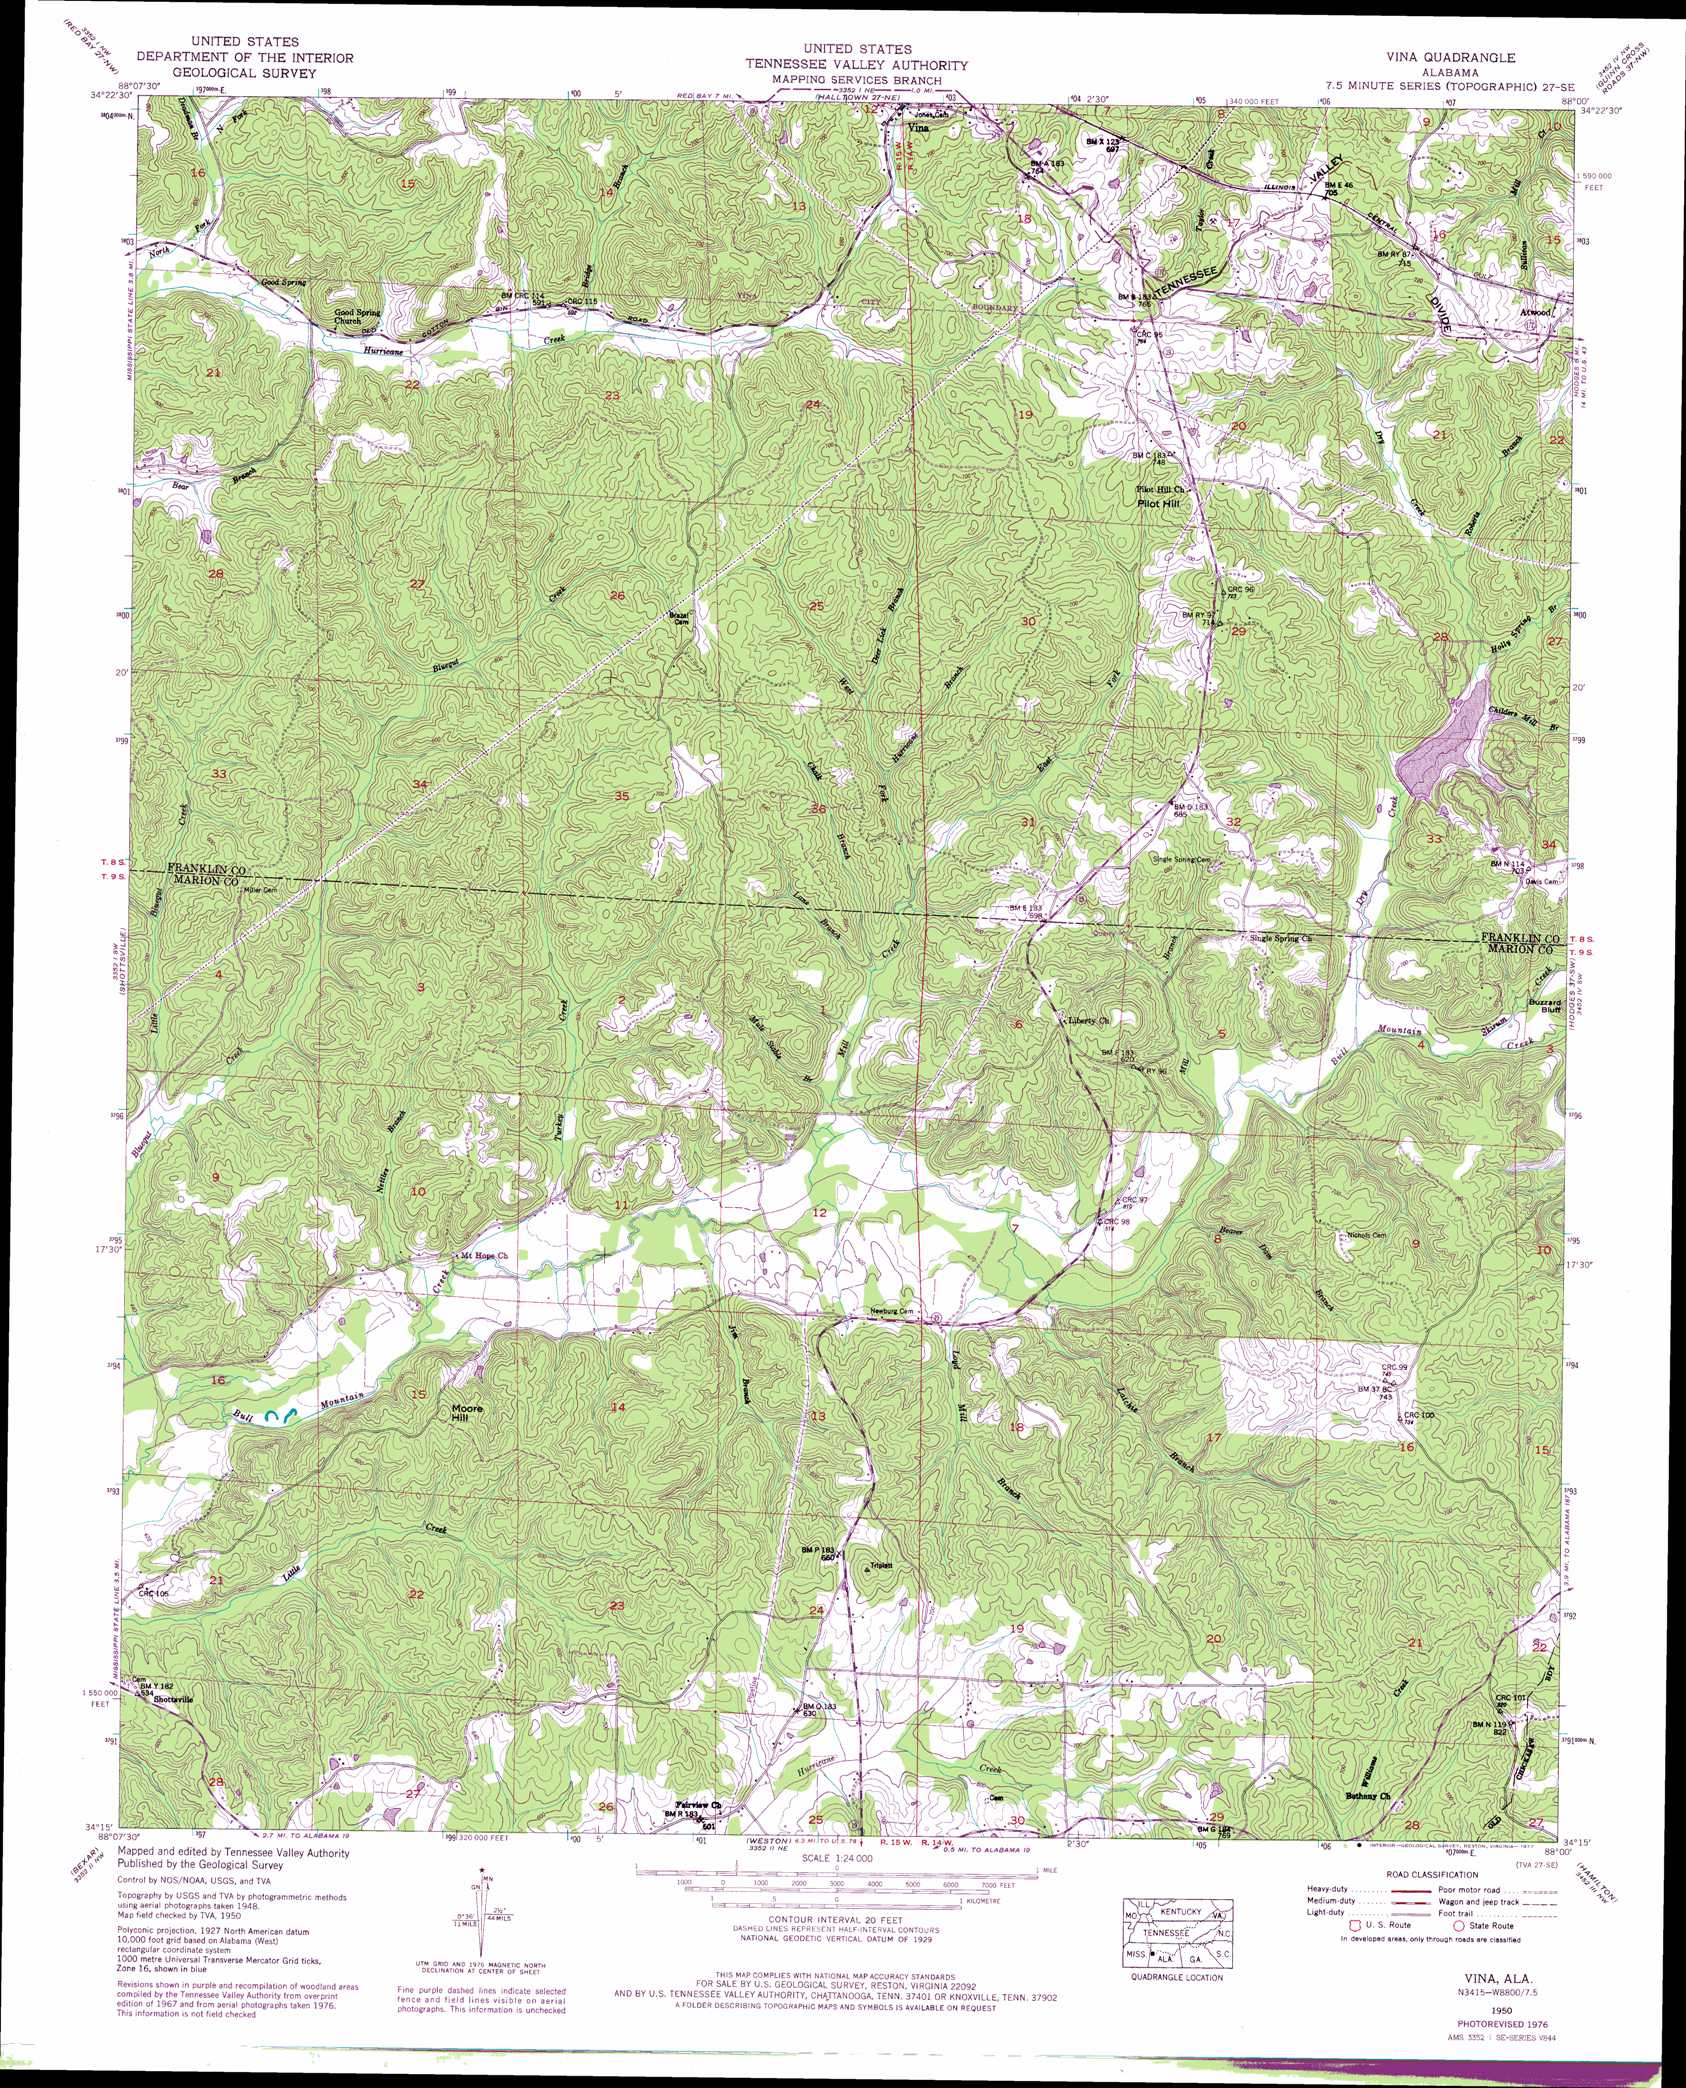 Vina topographic map, AL - USGS Topo Quad 34088c1